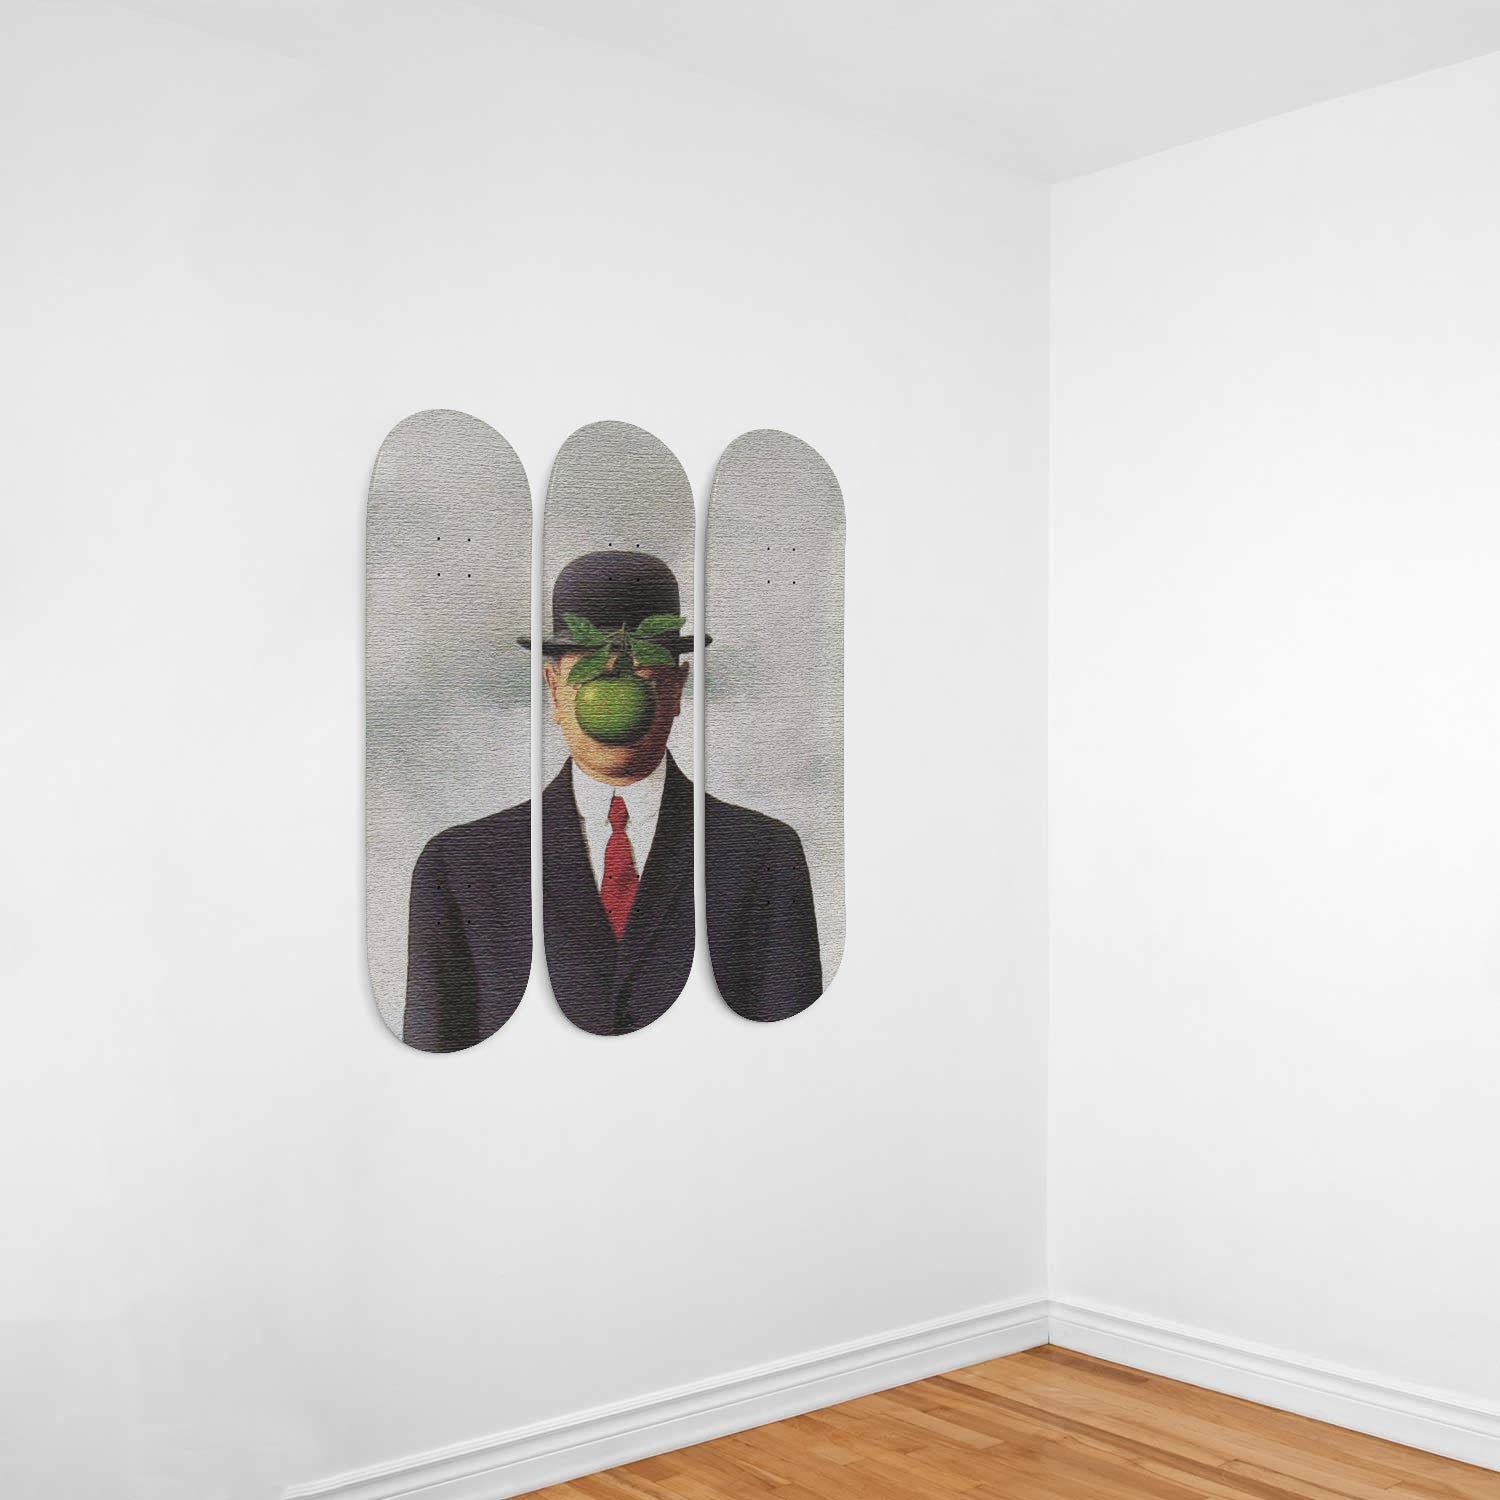 vægt bølge Forberedende navn René Magritte - The Son of Man 1964 Painting - 3-piece Skateboard Wall –  Skateboard Artsy